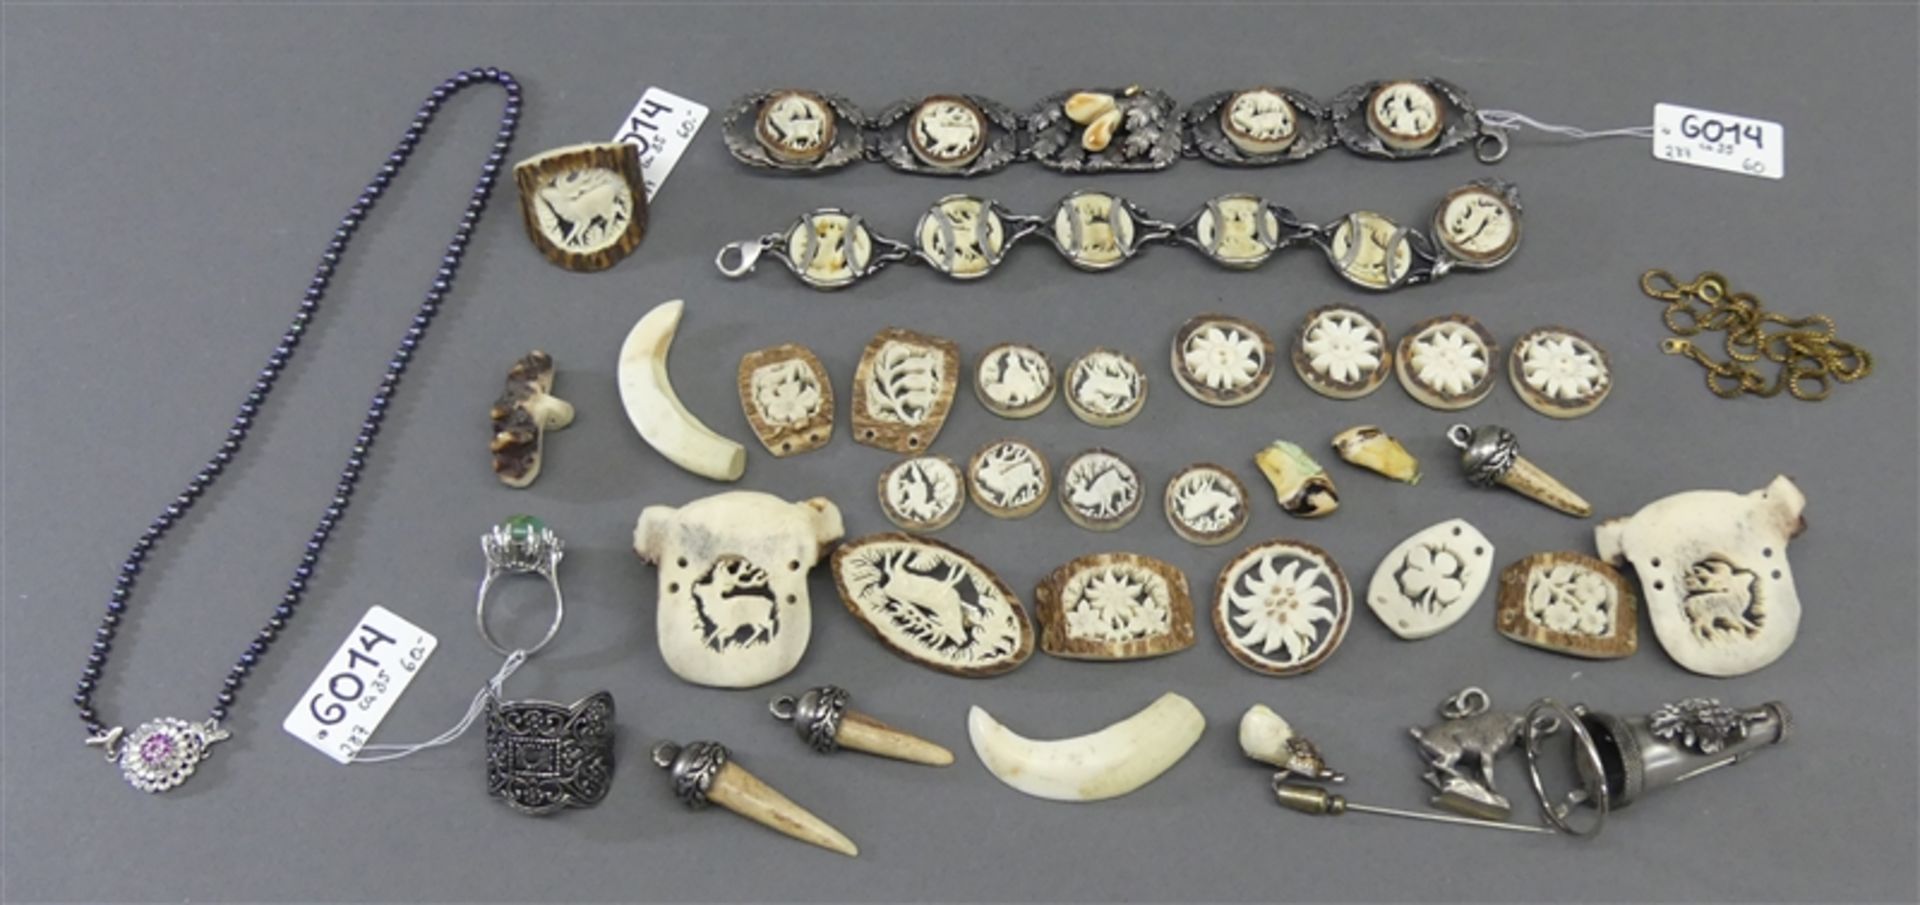 KonvolutHirschhornschnitzereien, Armbänder Huthalter, Grandln, teilweise Silber gefasst, Damenring